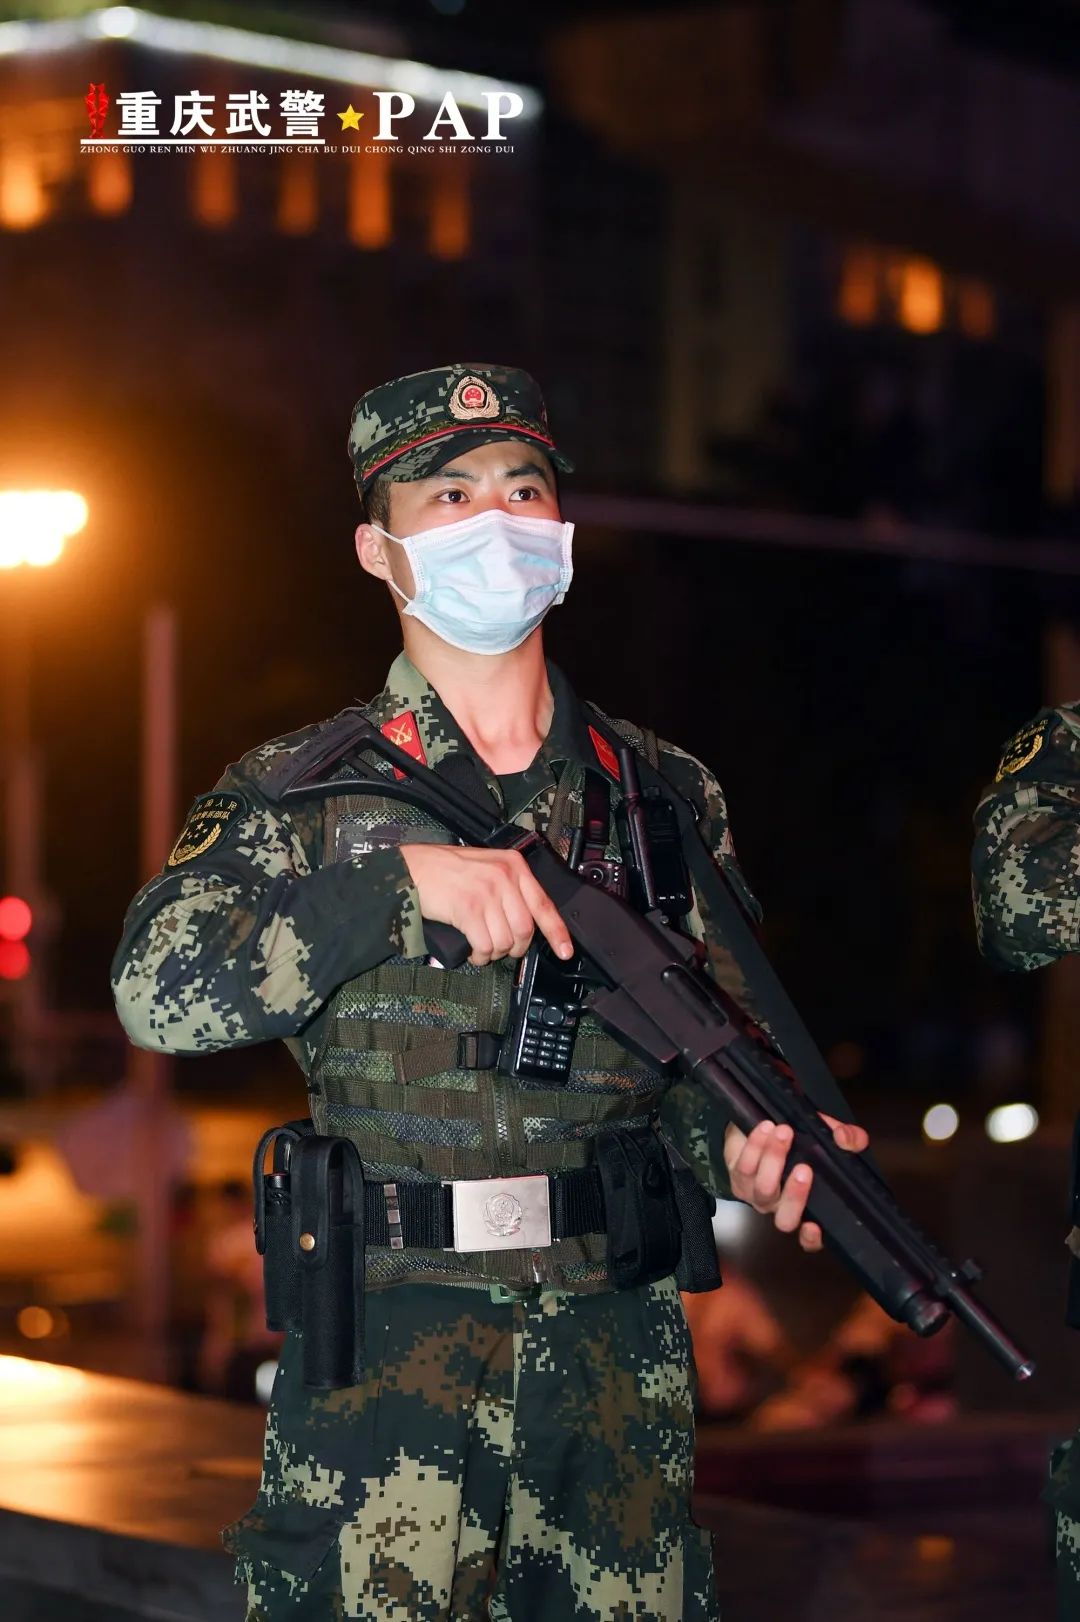 重庆:武警加强执勤 确保节日安全